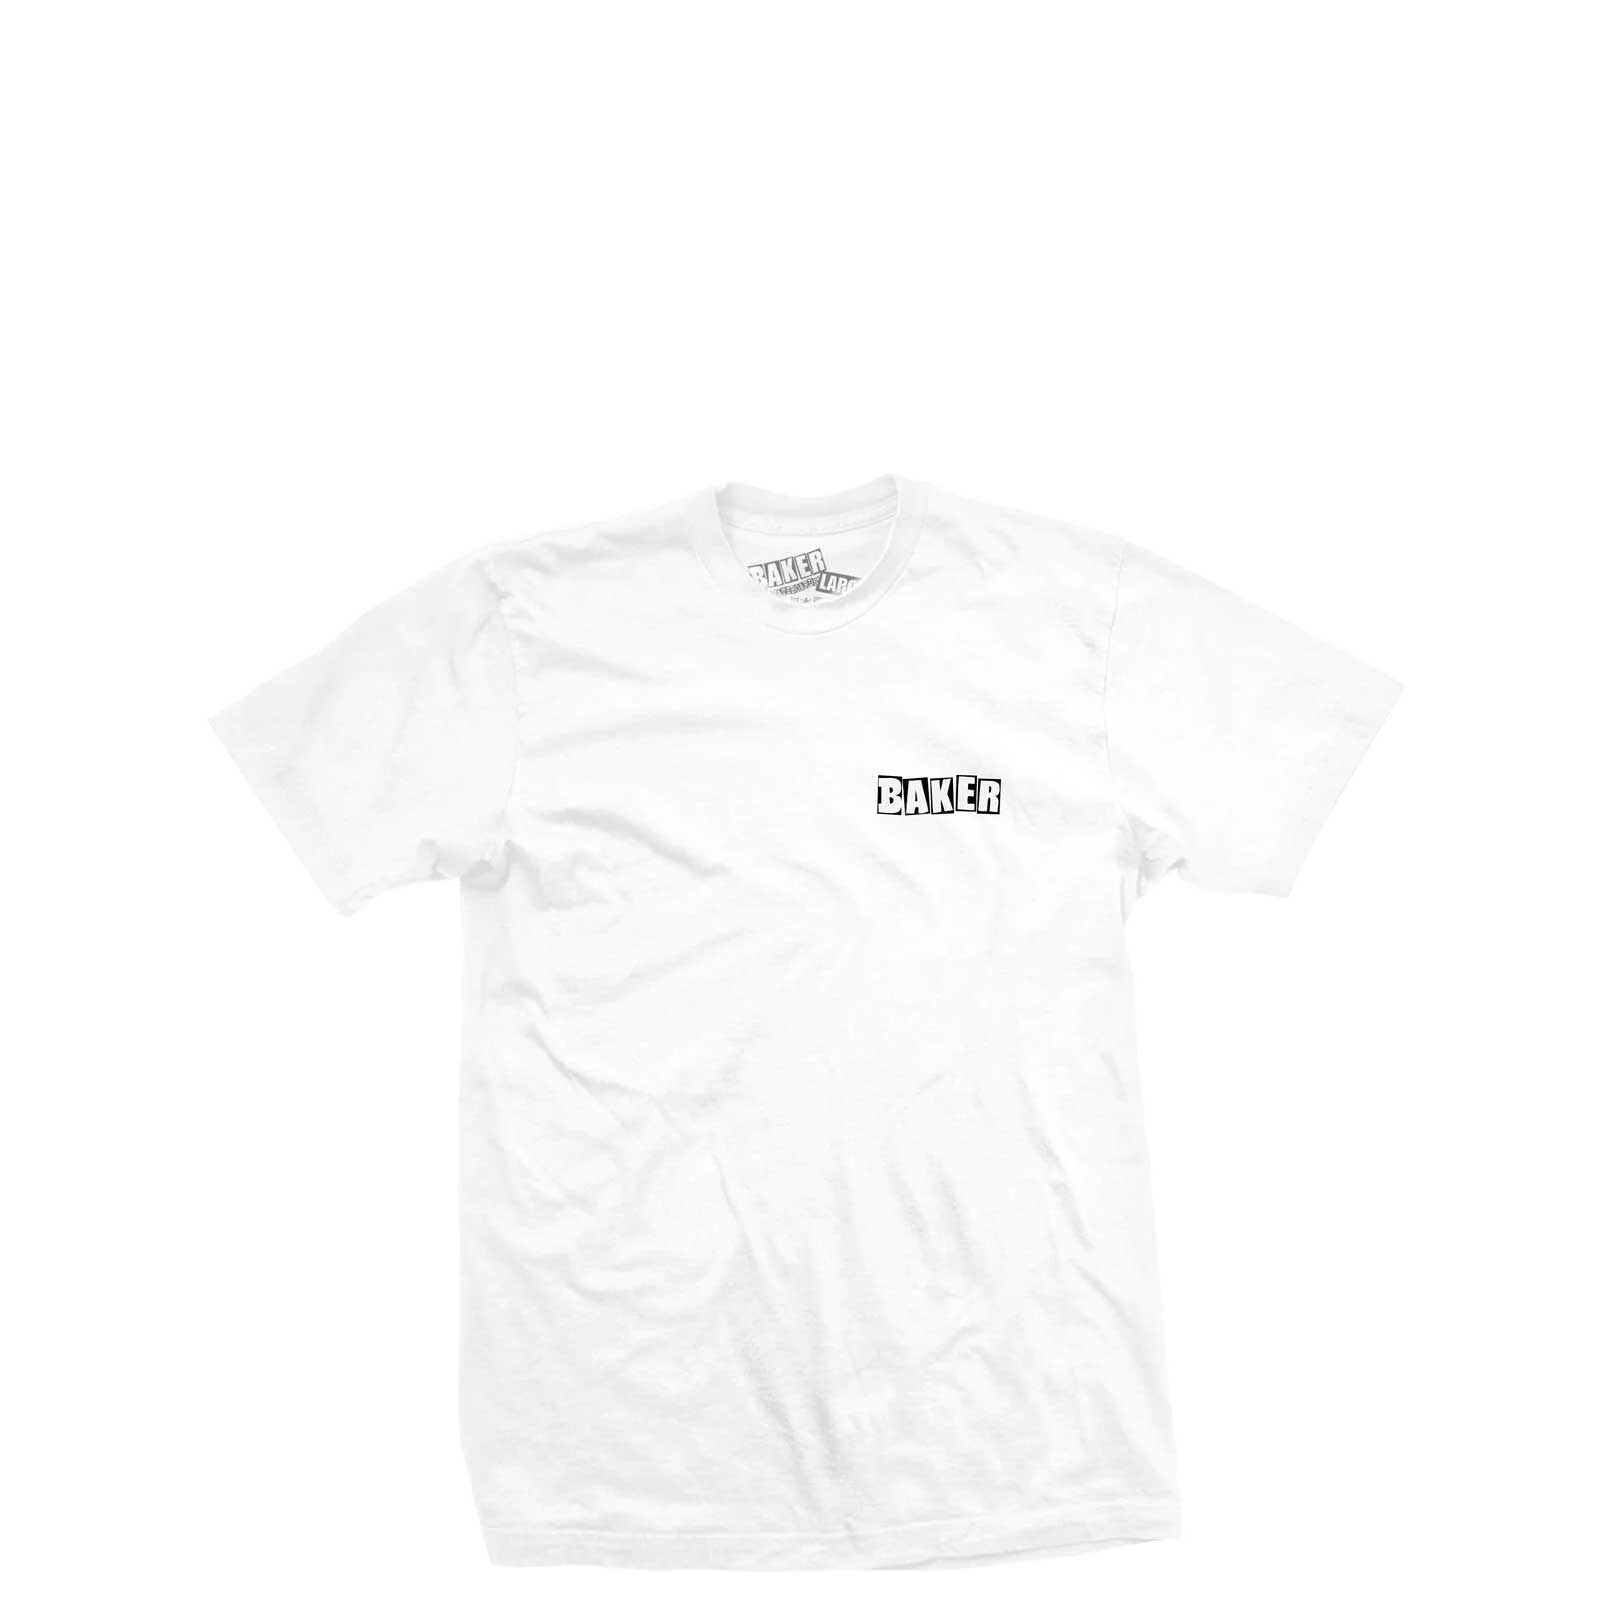 Baker Uno T-Shirt, white - Tiki Room Skateboards - 1